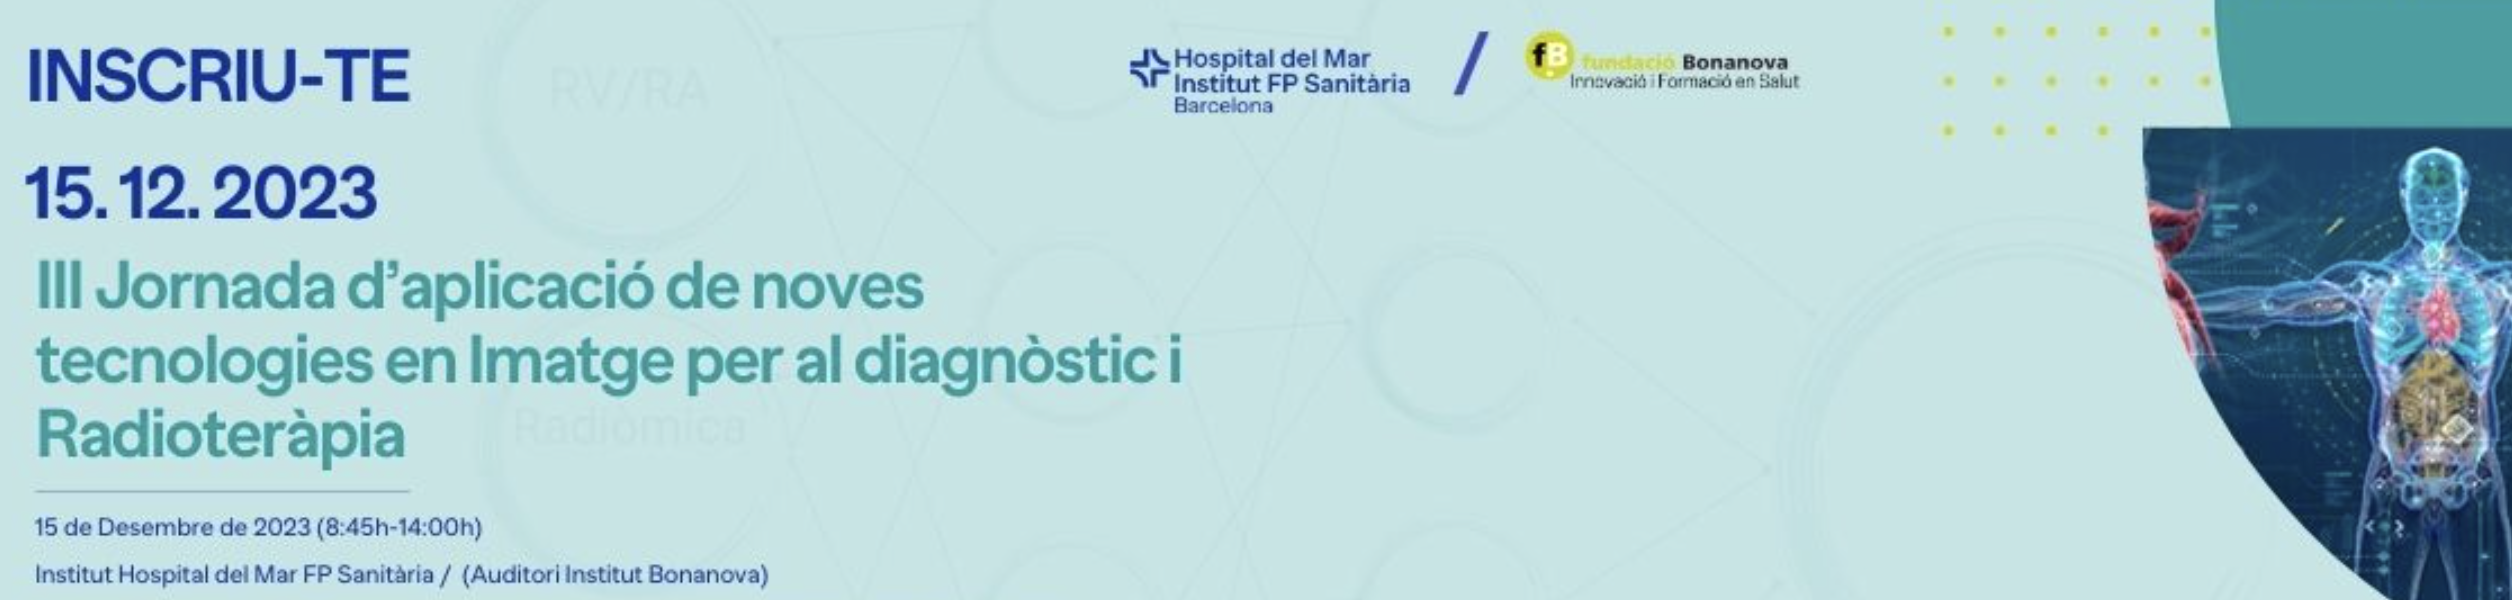 IIIa Jornada de Aplicación de nuevas tecnologías en Imagen para el Diagnóstico, Radioterapia y Dosimetría.